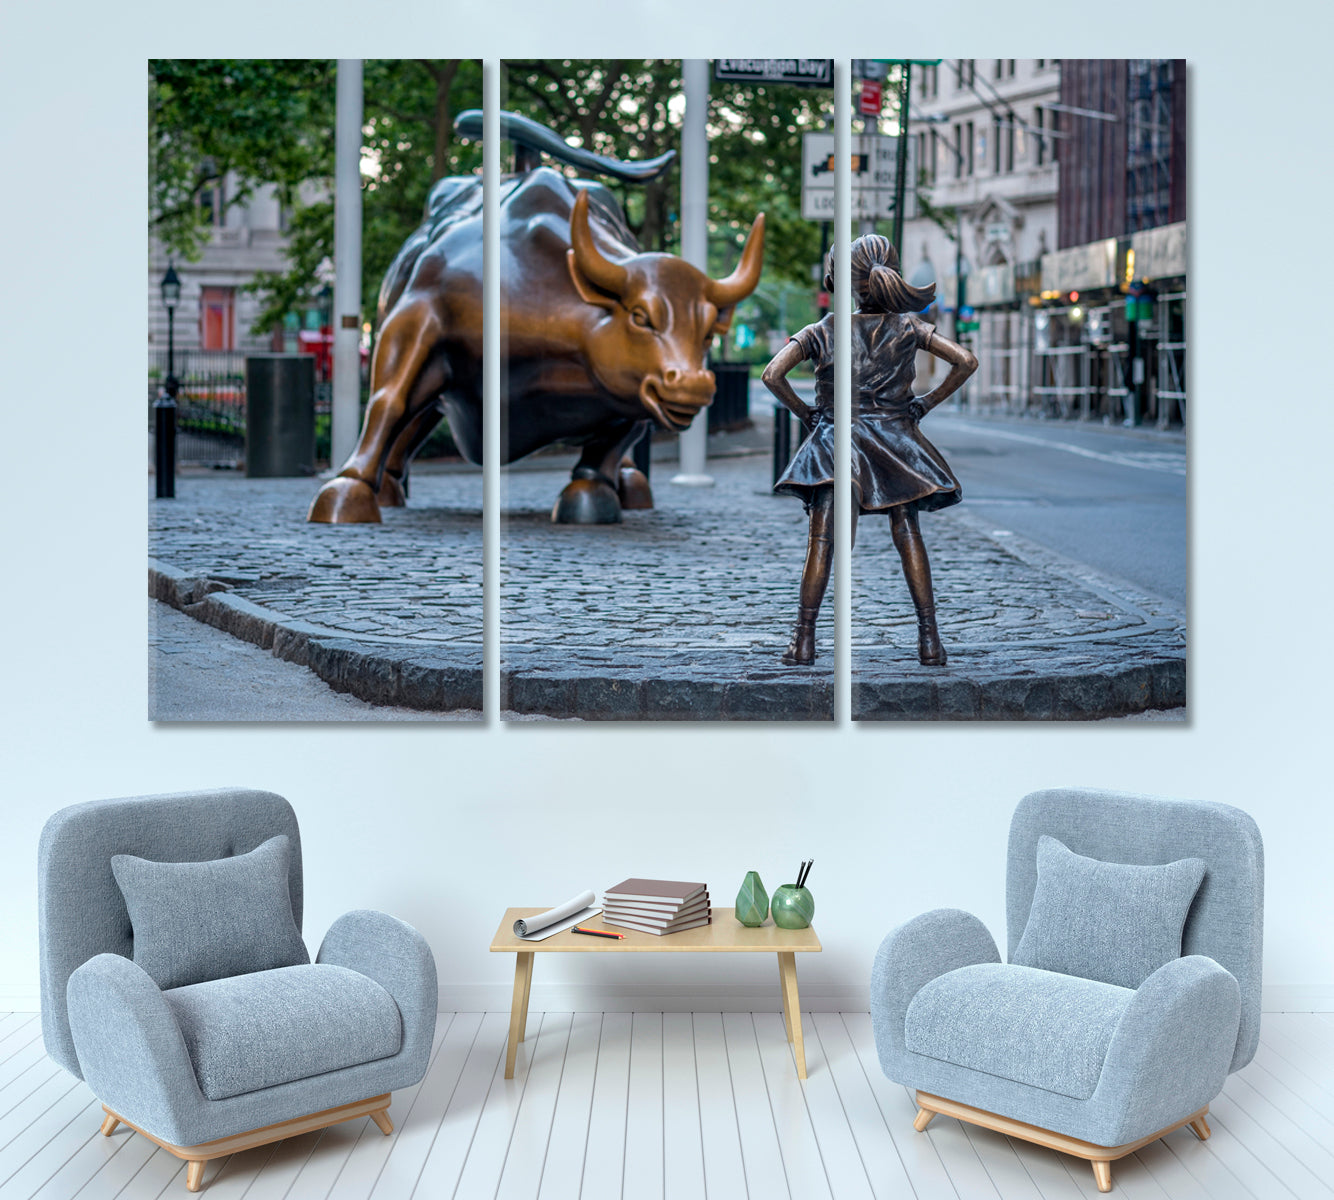 Charging Bull Manhattan New York City Famous Landmark Famous Landmarks Artwork Print Artesty 3 panels 36" x 24" 